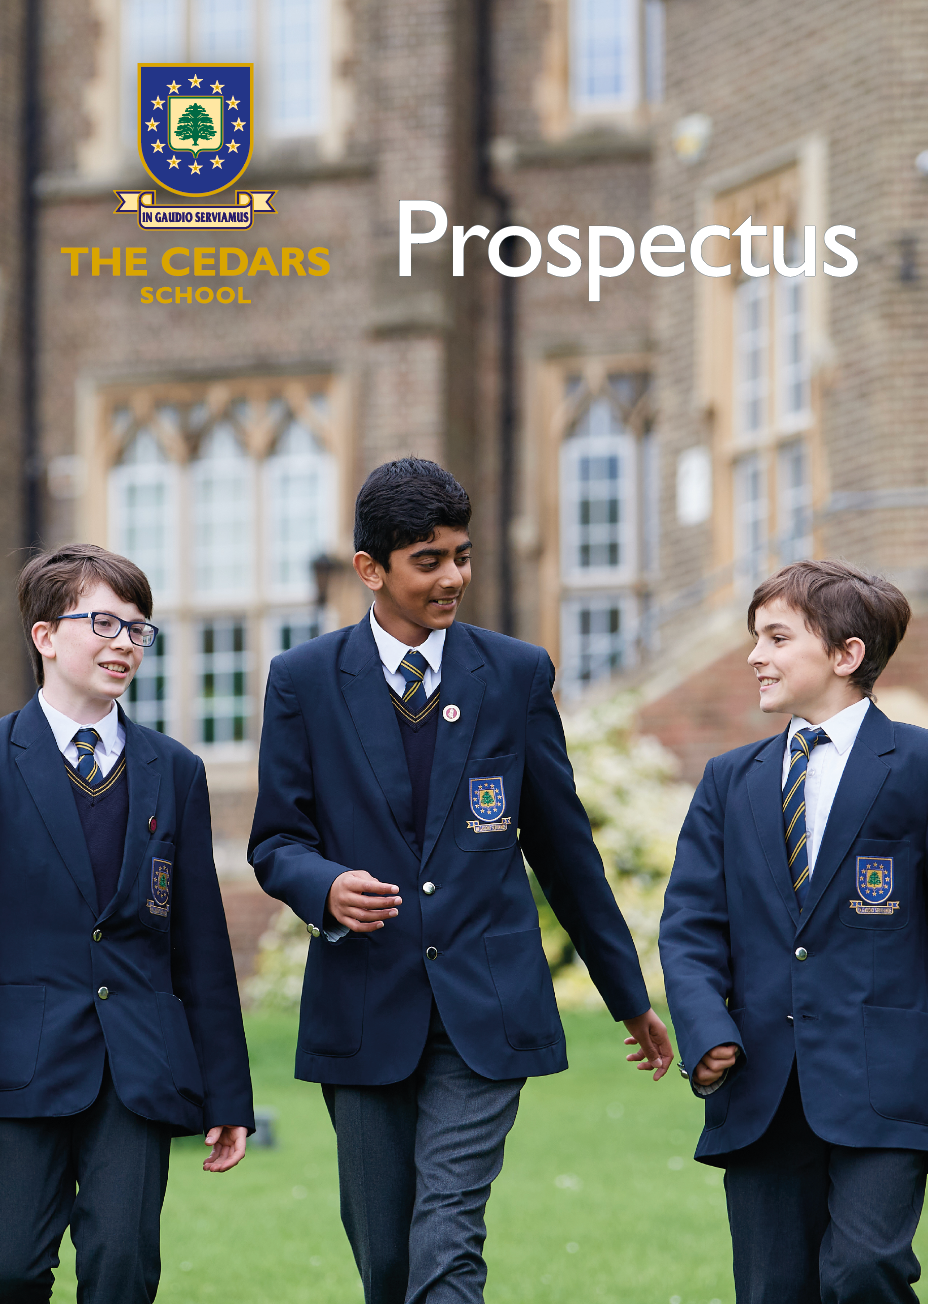 The Cedars Prospectus